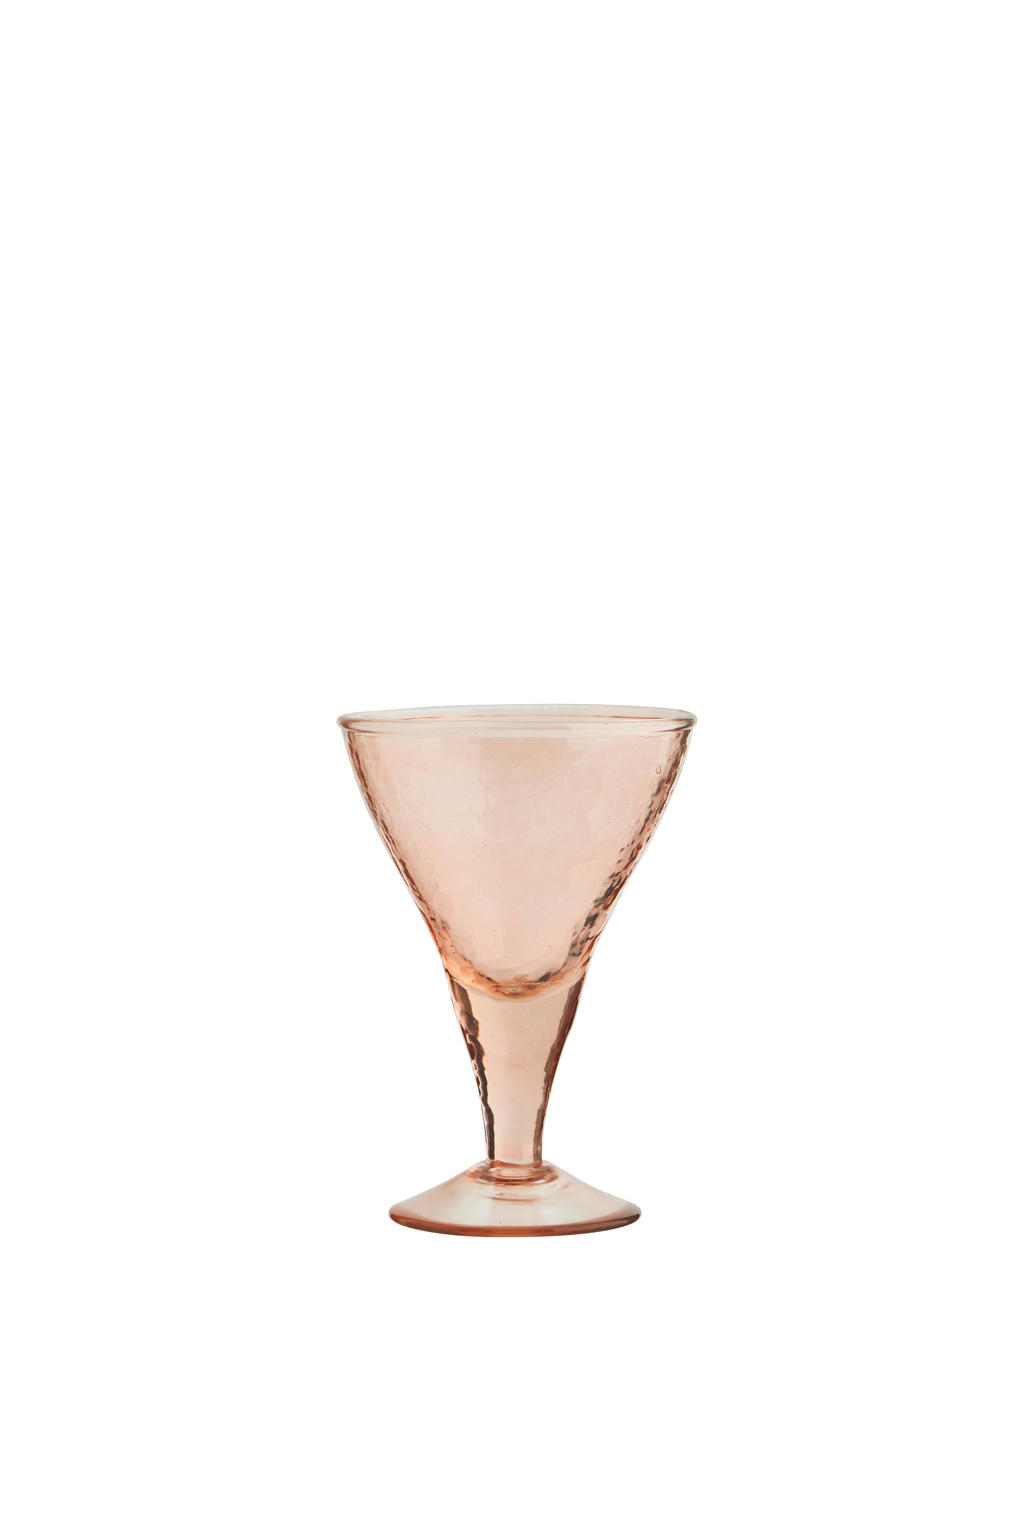 Madam Stoltz cocktailglas